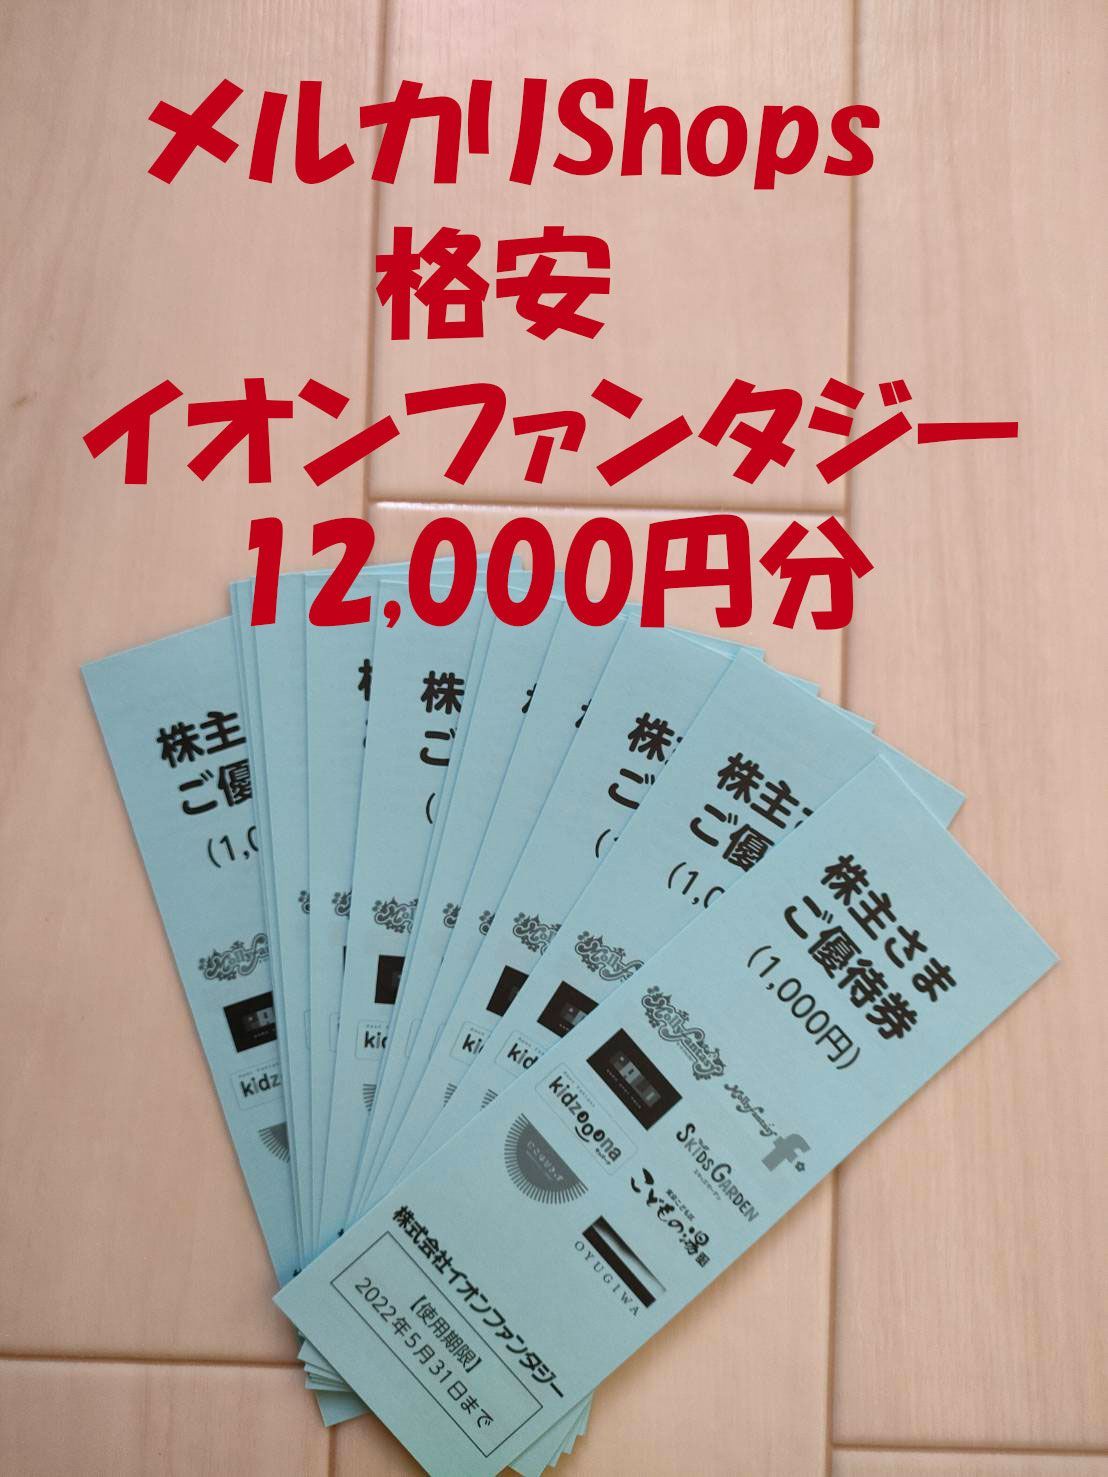 非常に良い - イオンファンタジー 優待券1000円分2セット - 安い公式